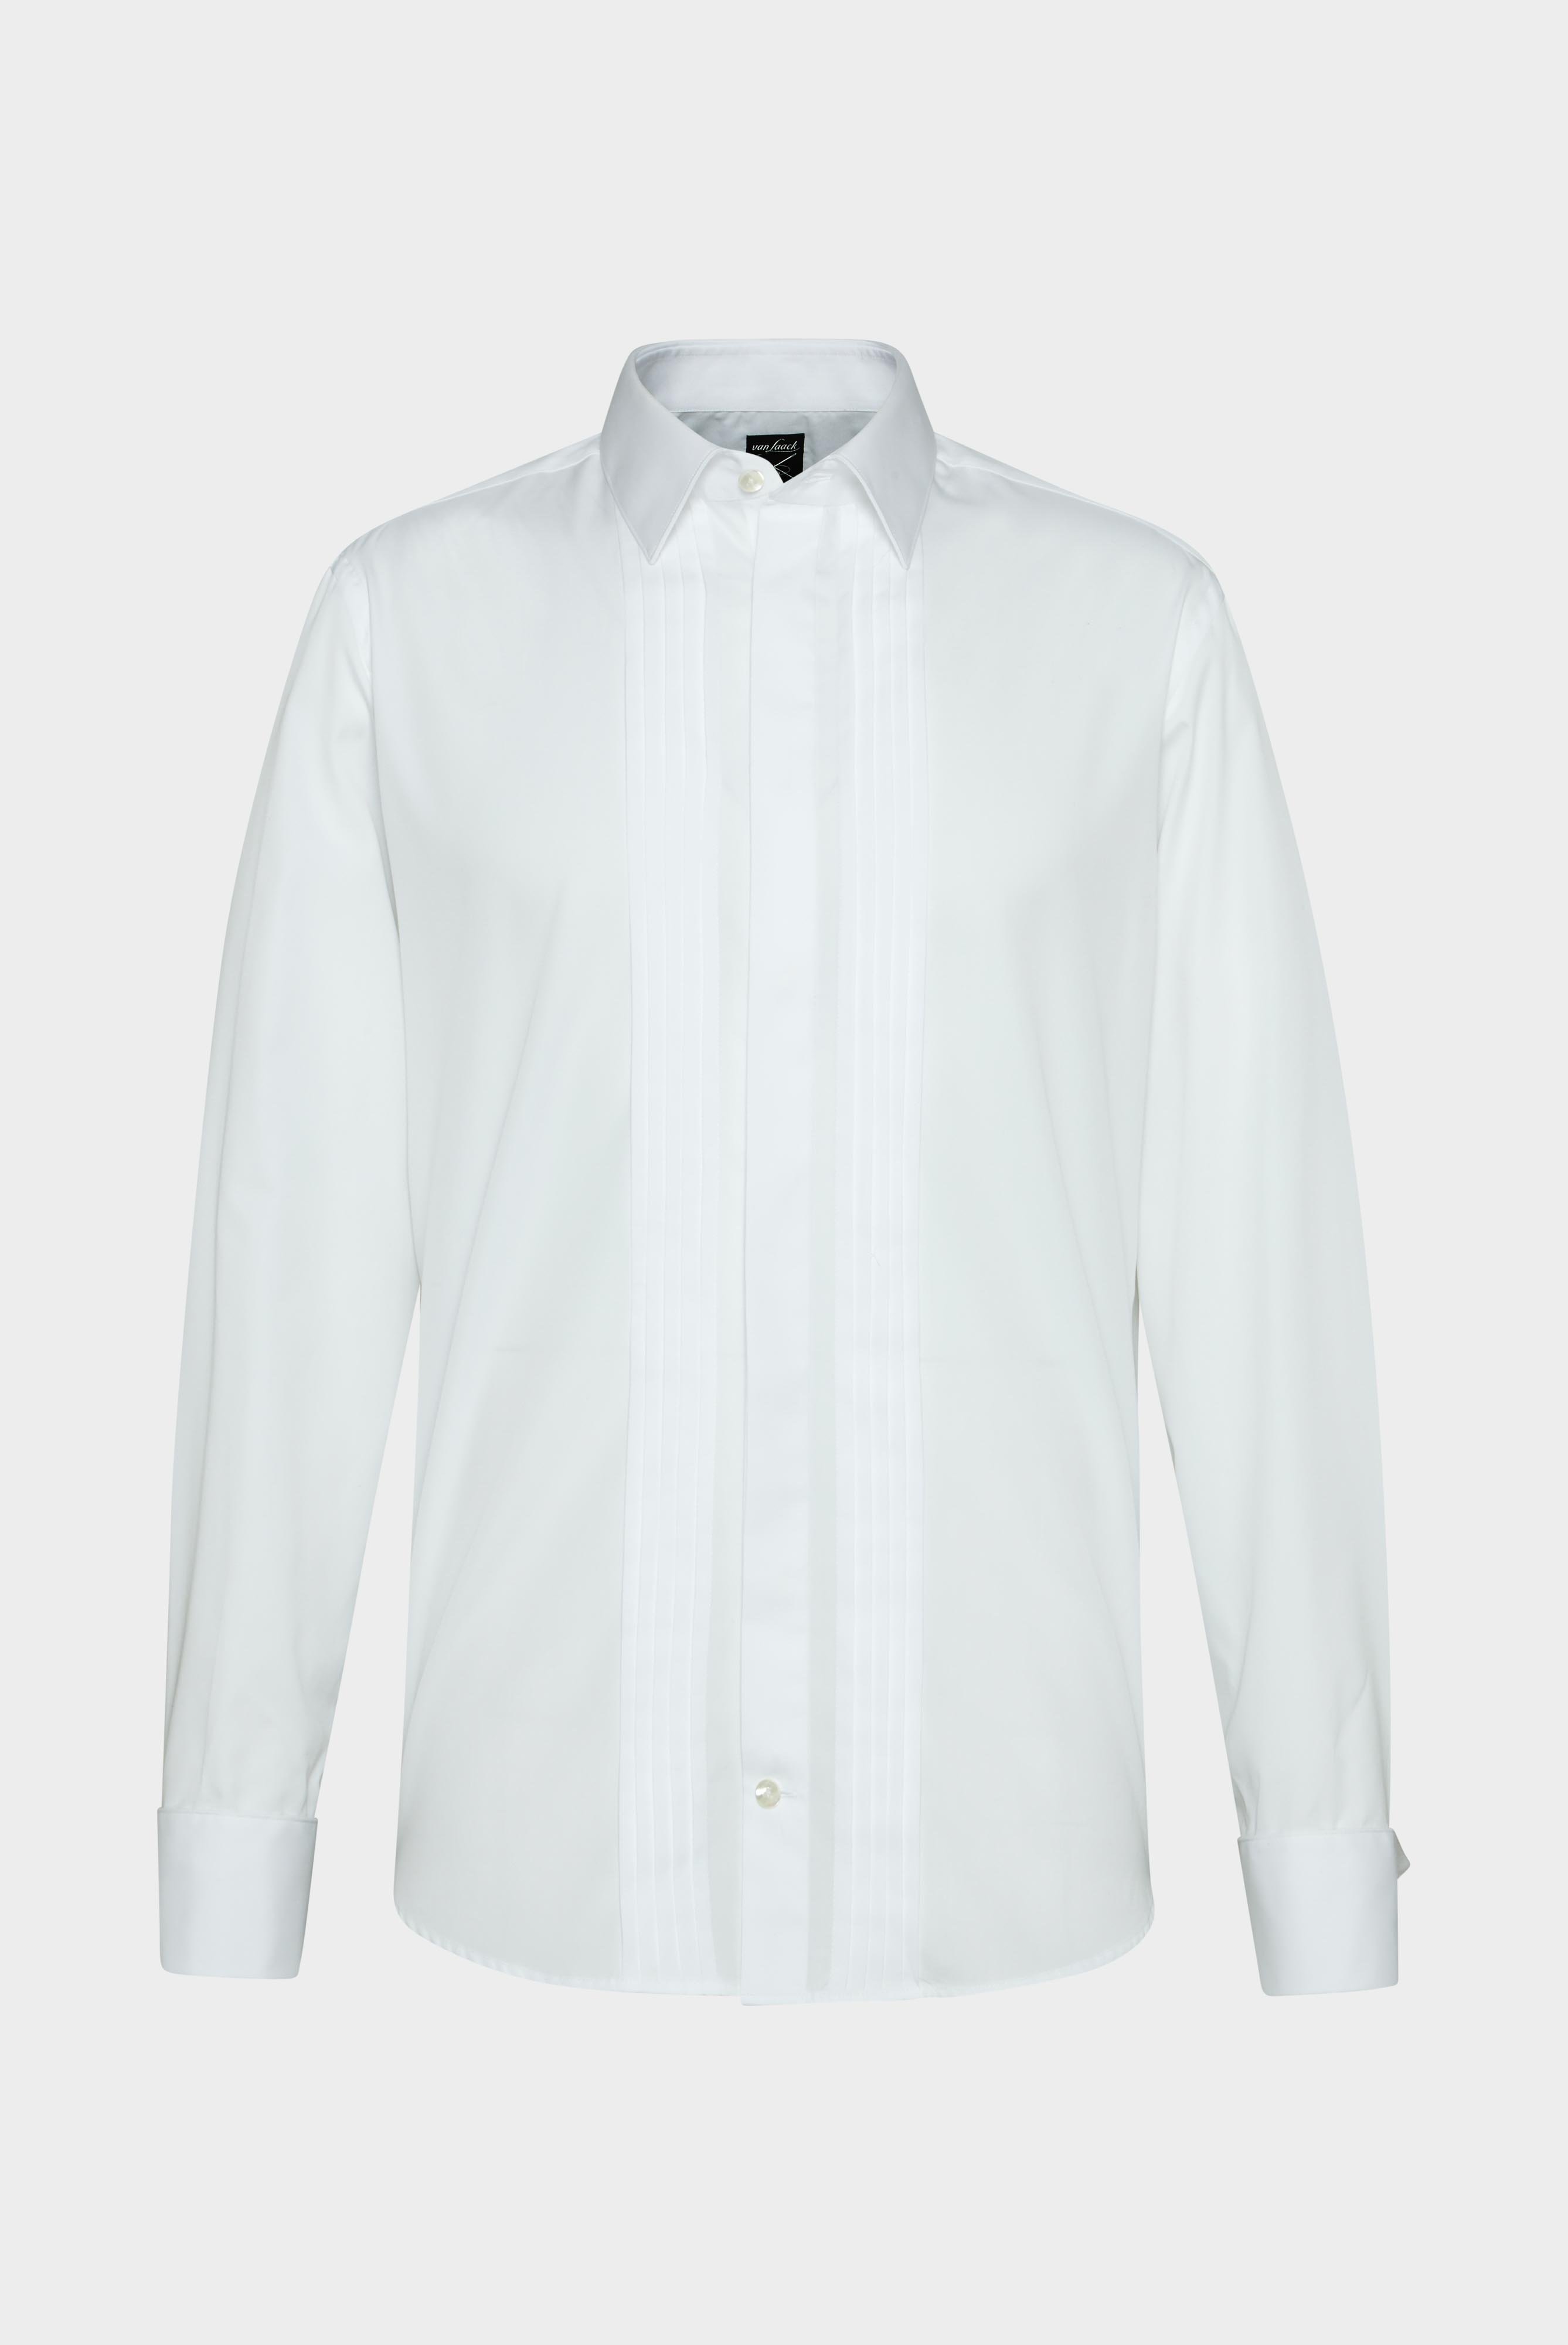 Business Hemden+Smokinghemd mit Plissee-Einsatz Tailor Fit+20.2066.NV.130648.000.37